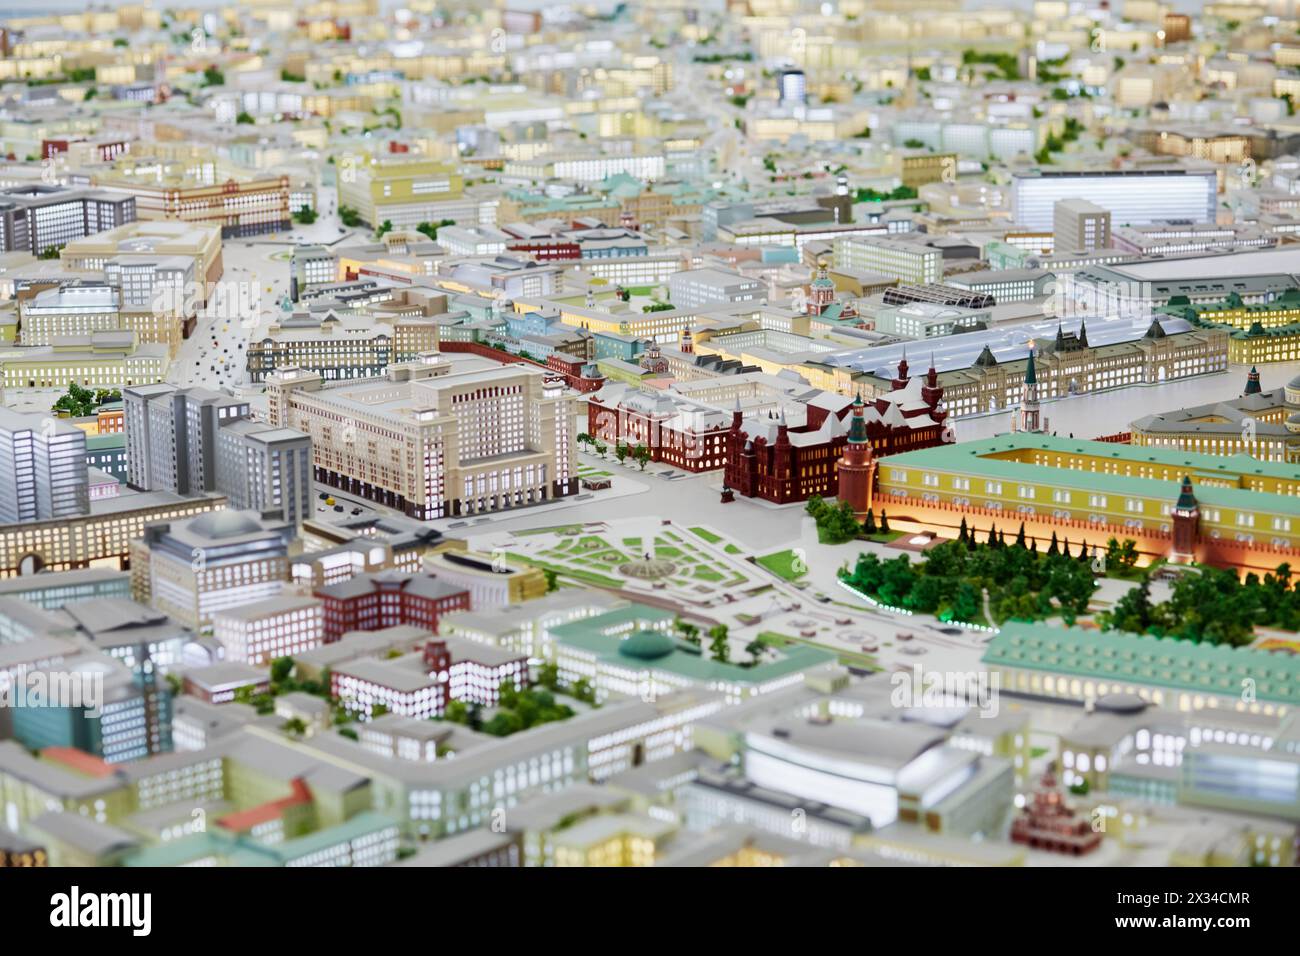 MOSKAU, RUSSLAND - 20. Dezember 2014: Miniatur des Manezhnaja-Platzes und des Kremls auf Moskauer Grundriss bei der VDNKH-Ausstellung. Stockfoto